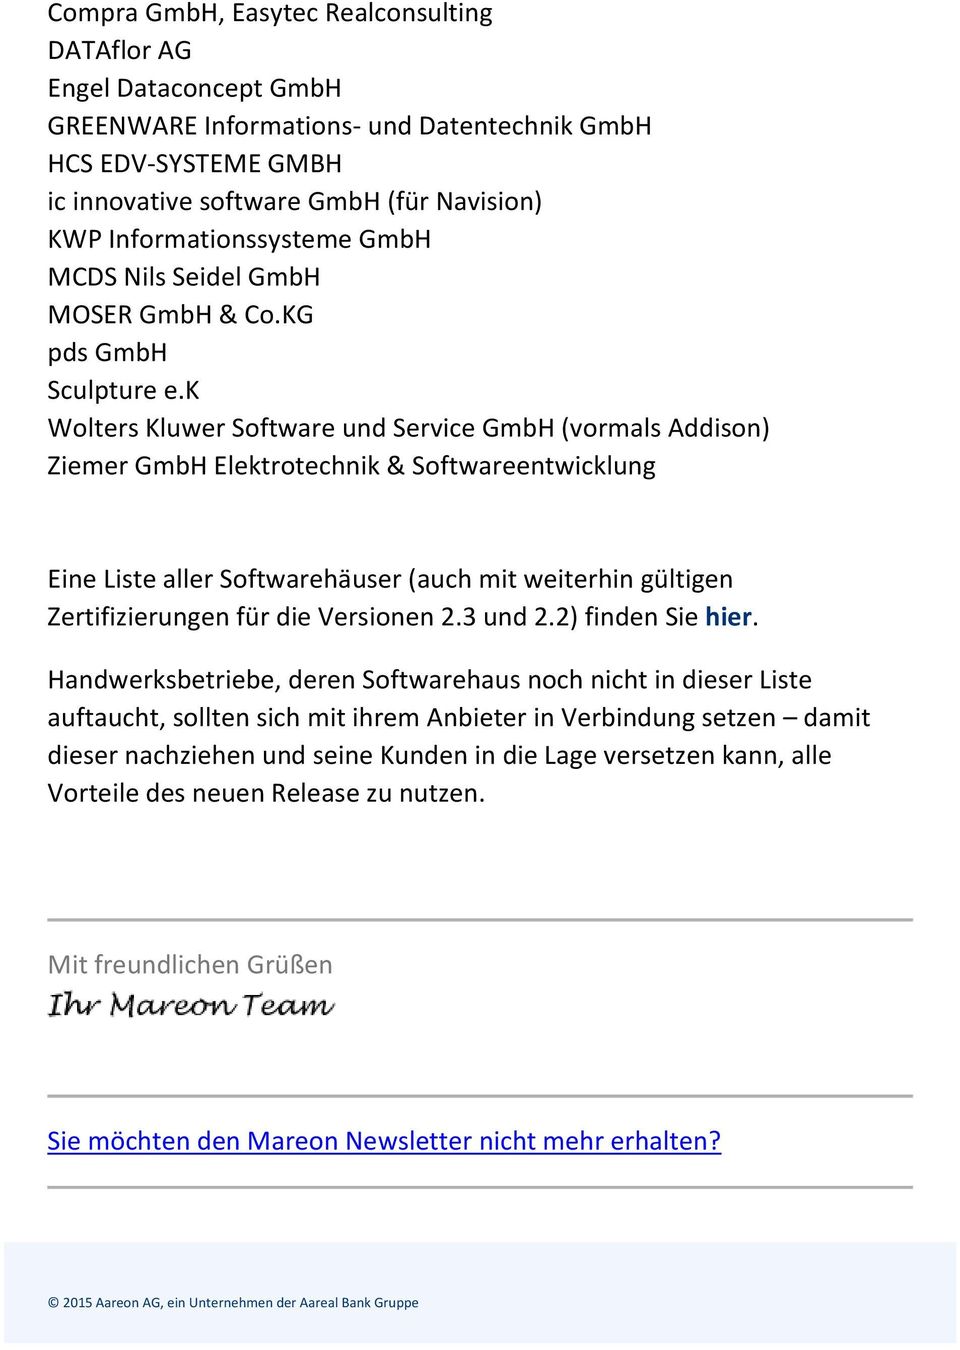 k Wolters Kluwer Software und Service GmbH (vormals Addison) Ziemer GmbH Elektrotechnik & Softwareentwicklung Eine Liste aller Softwarehäuser (auch mit weiterhin gültigen Zertifizierungen für die